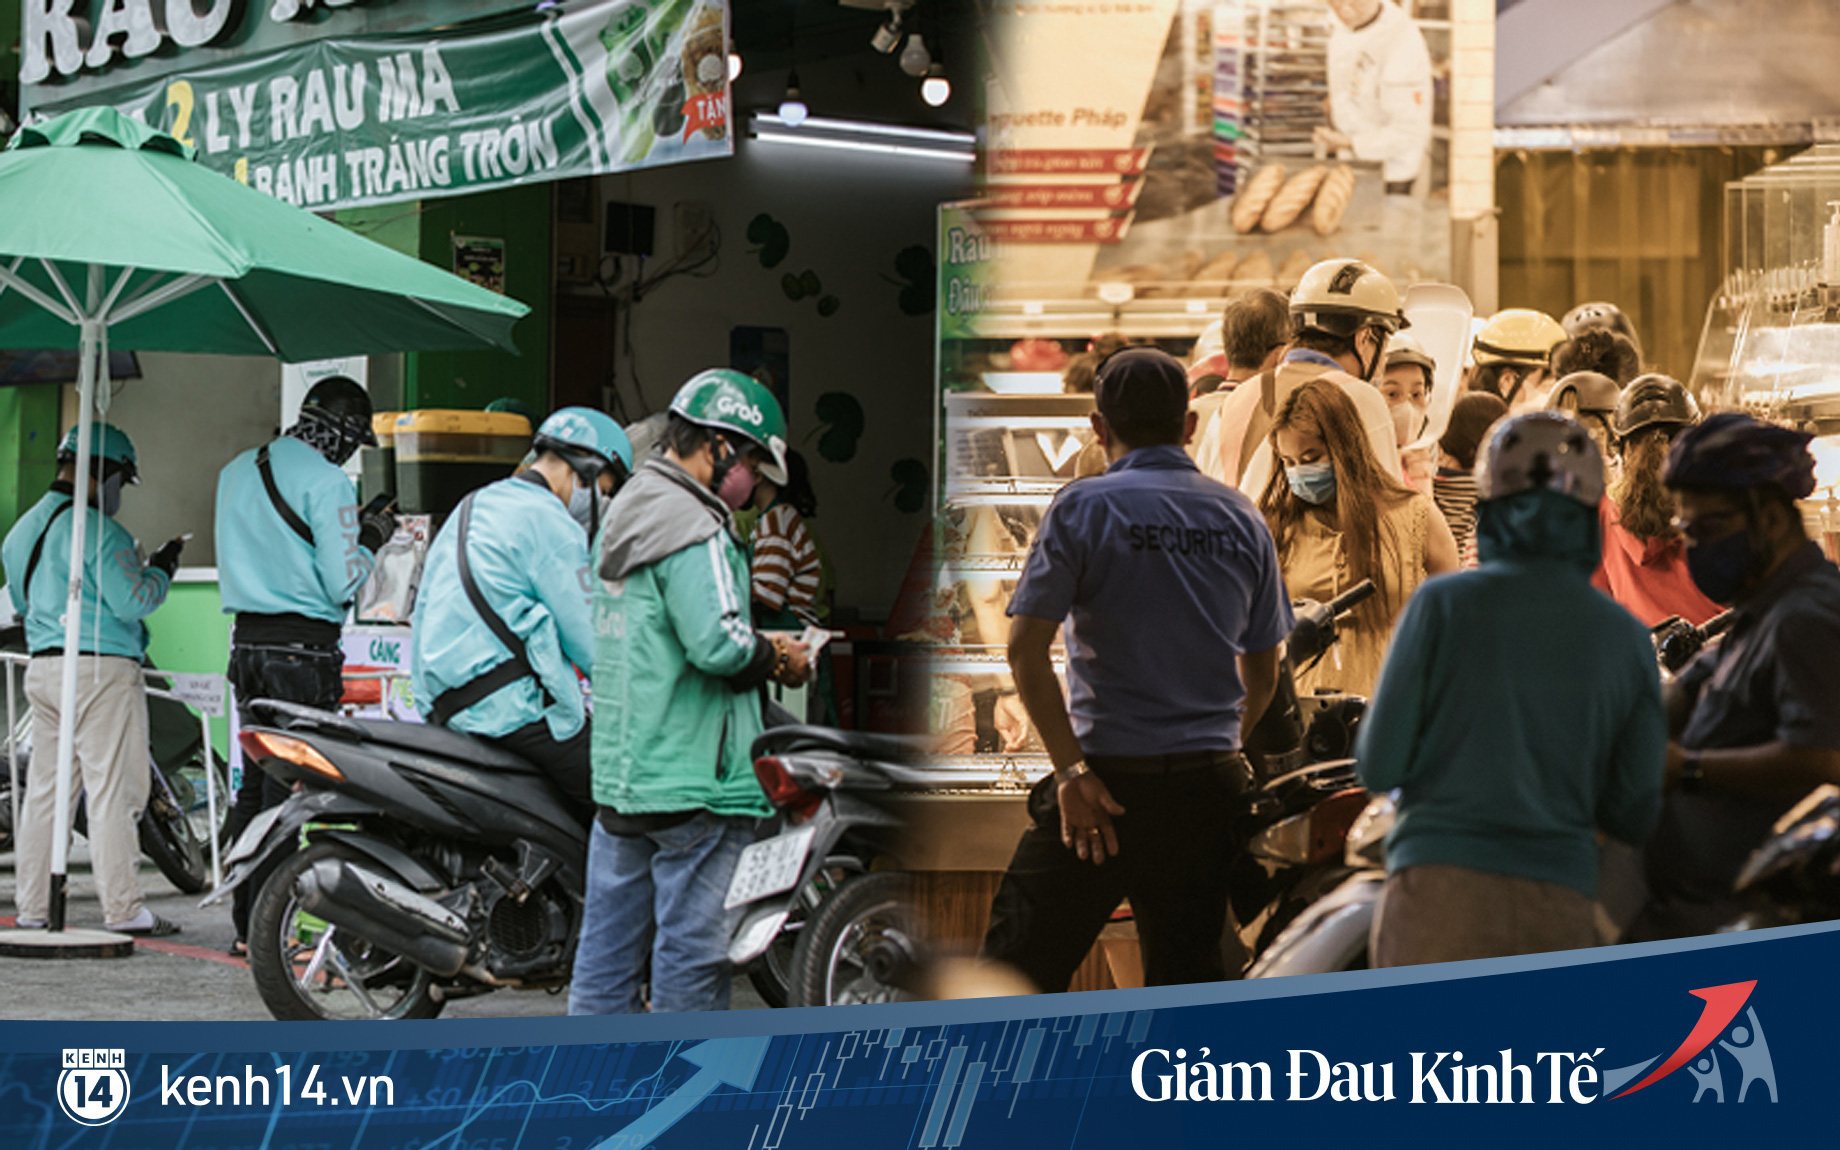 Hàng quán Sài Gòn thời hạn chế tiếp xúc xã hội: Người dân chuyển mạnh sang order đồ ăn online, shipper hối hả đi nhận và giao hàng